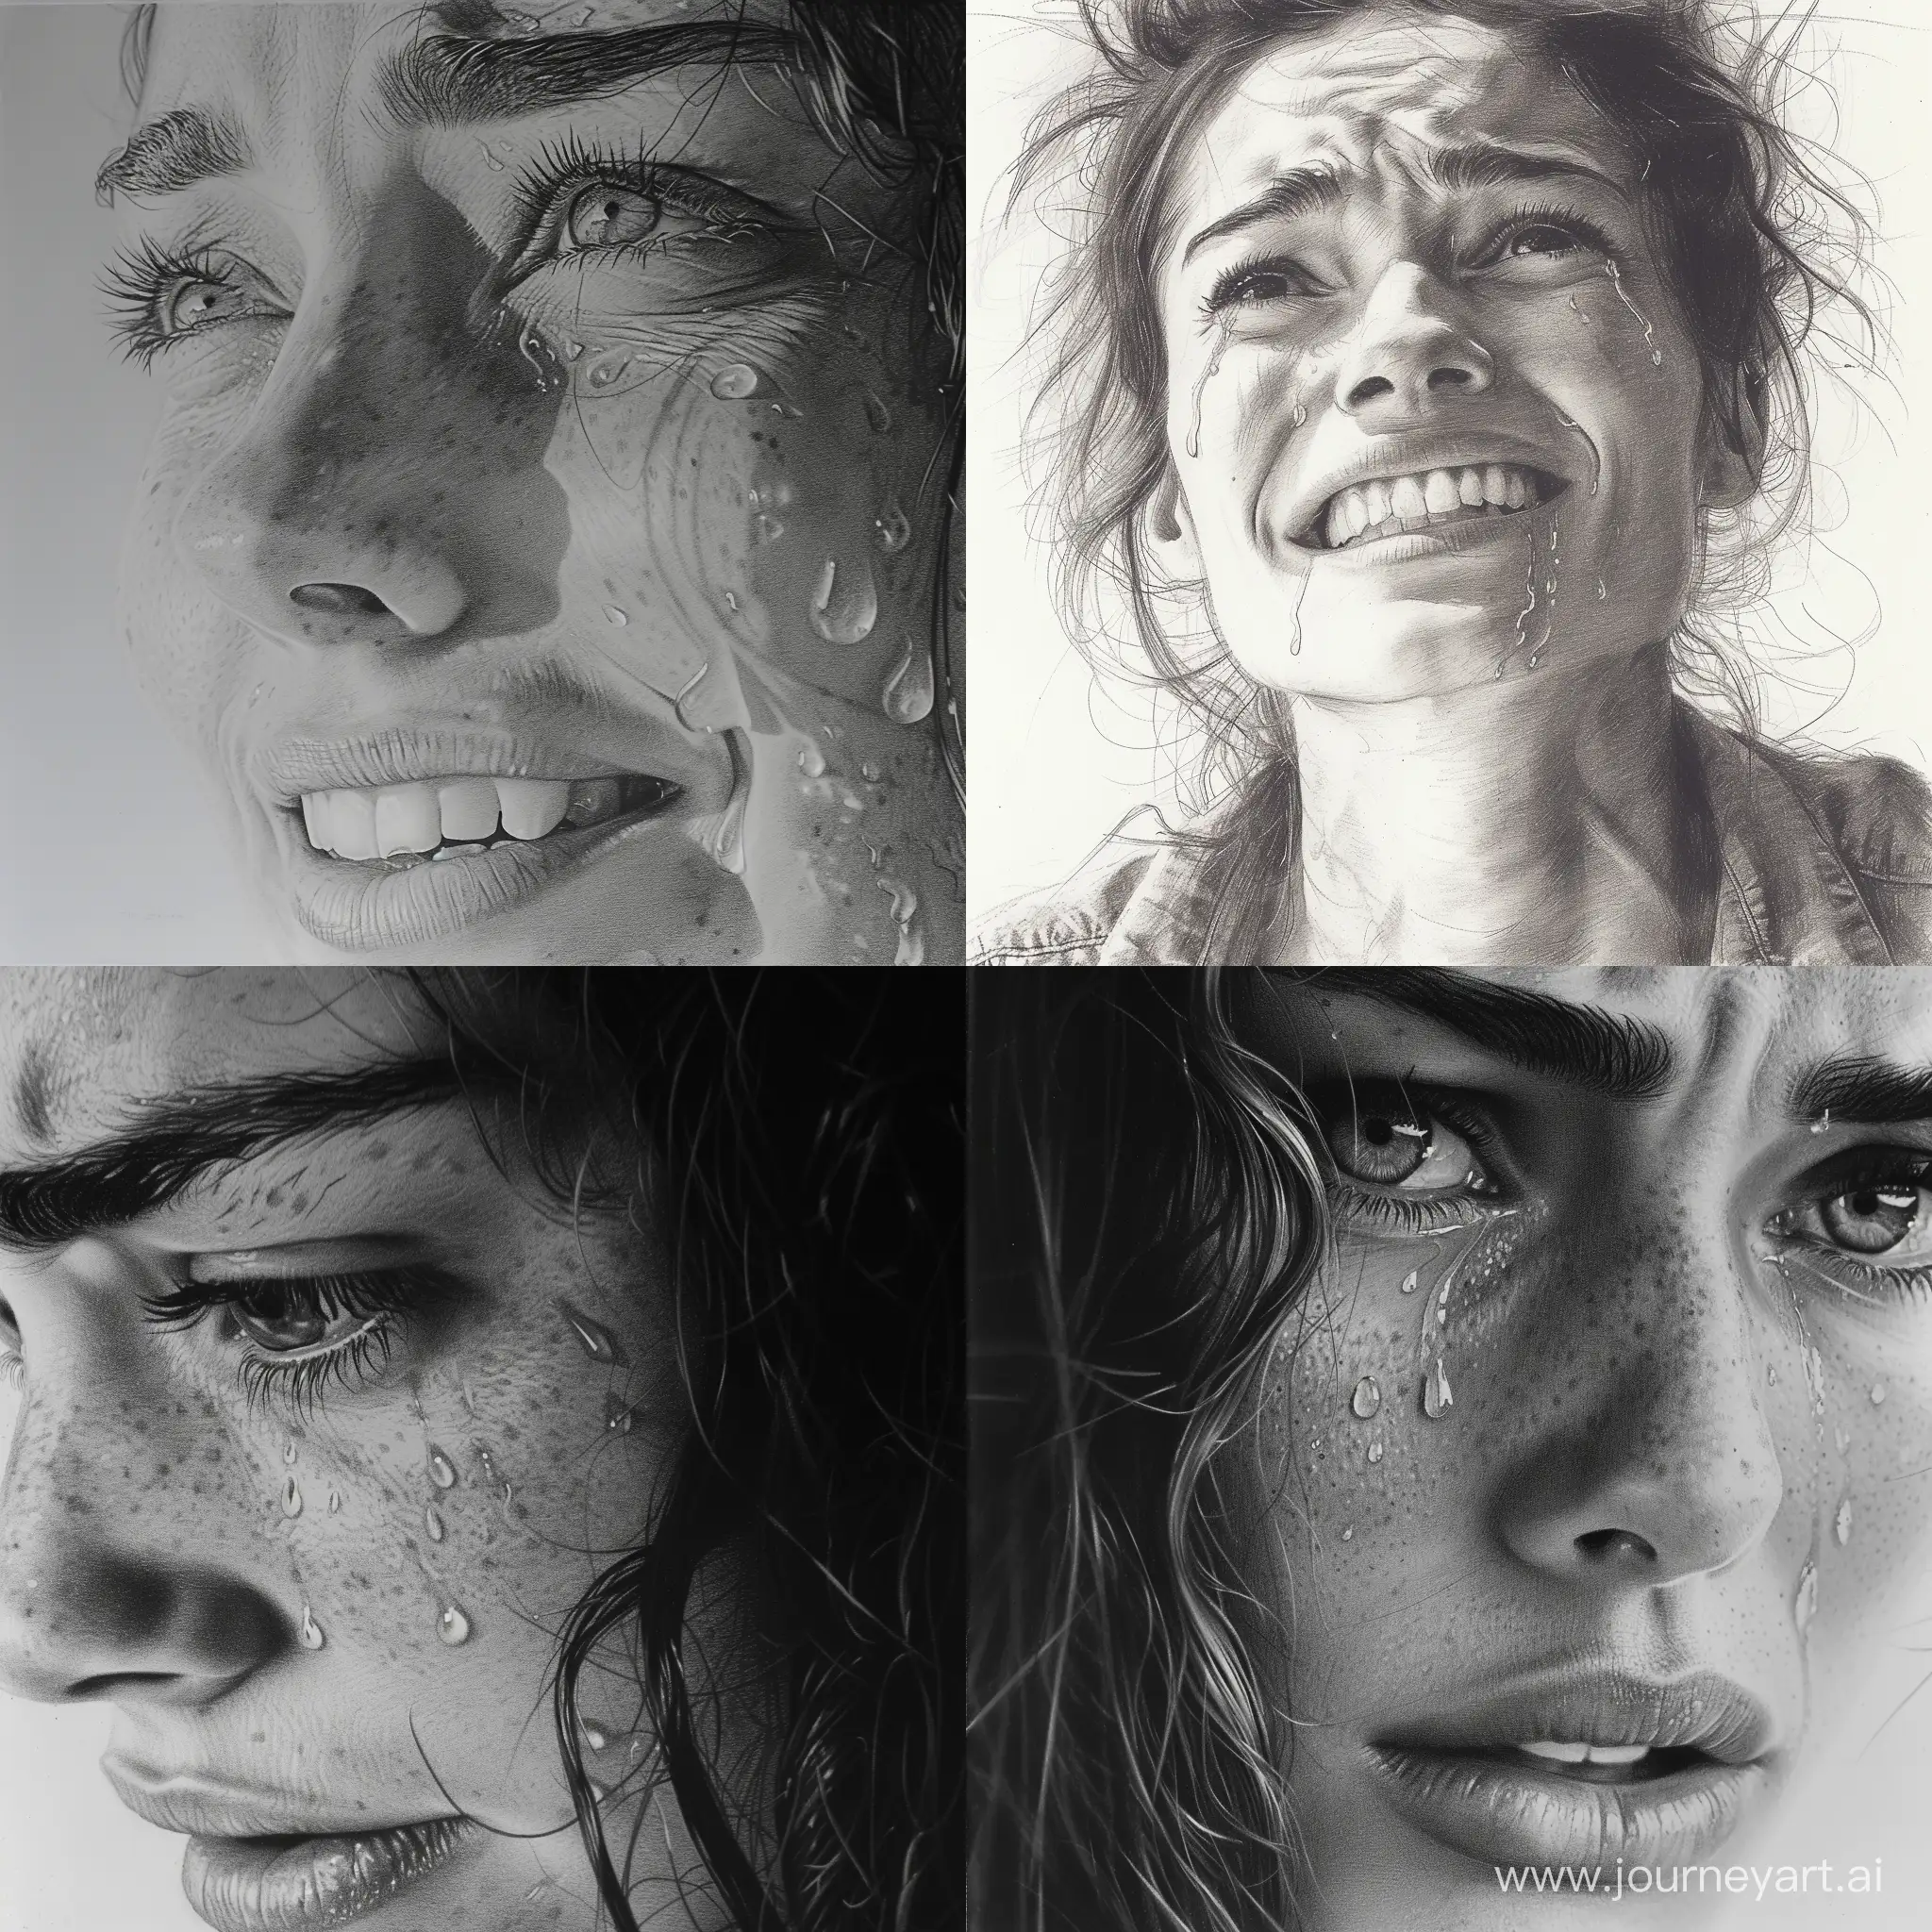 Joyful-Hyperrealistic-Portrait-Expressive-Tears-in-Sketch-Style